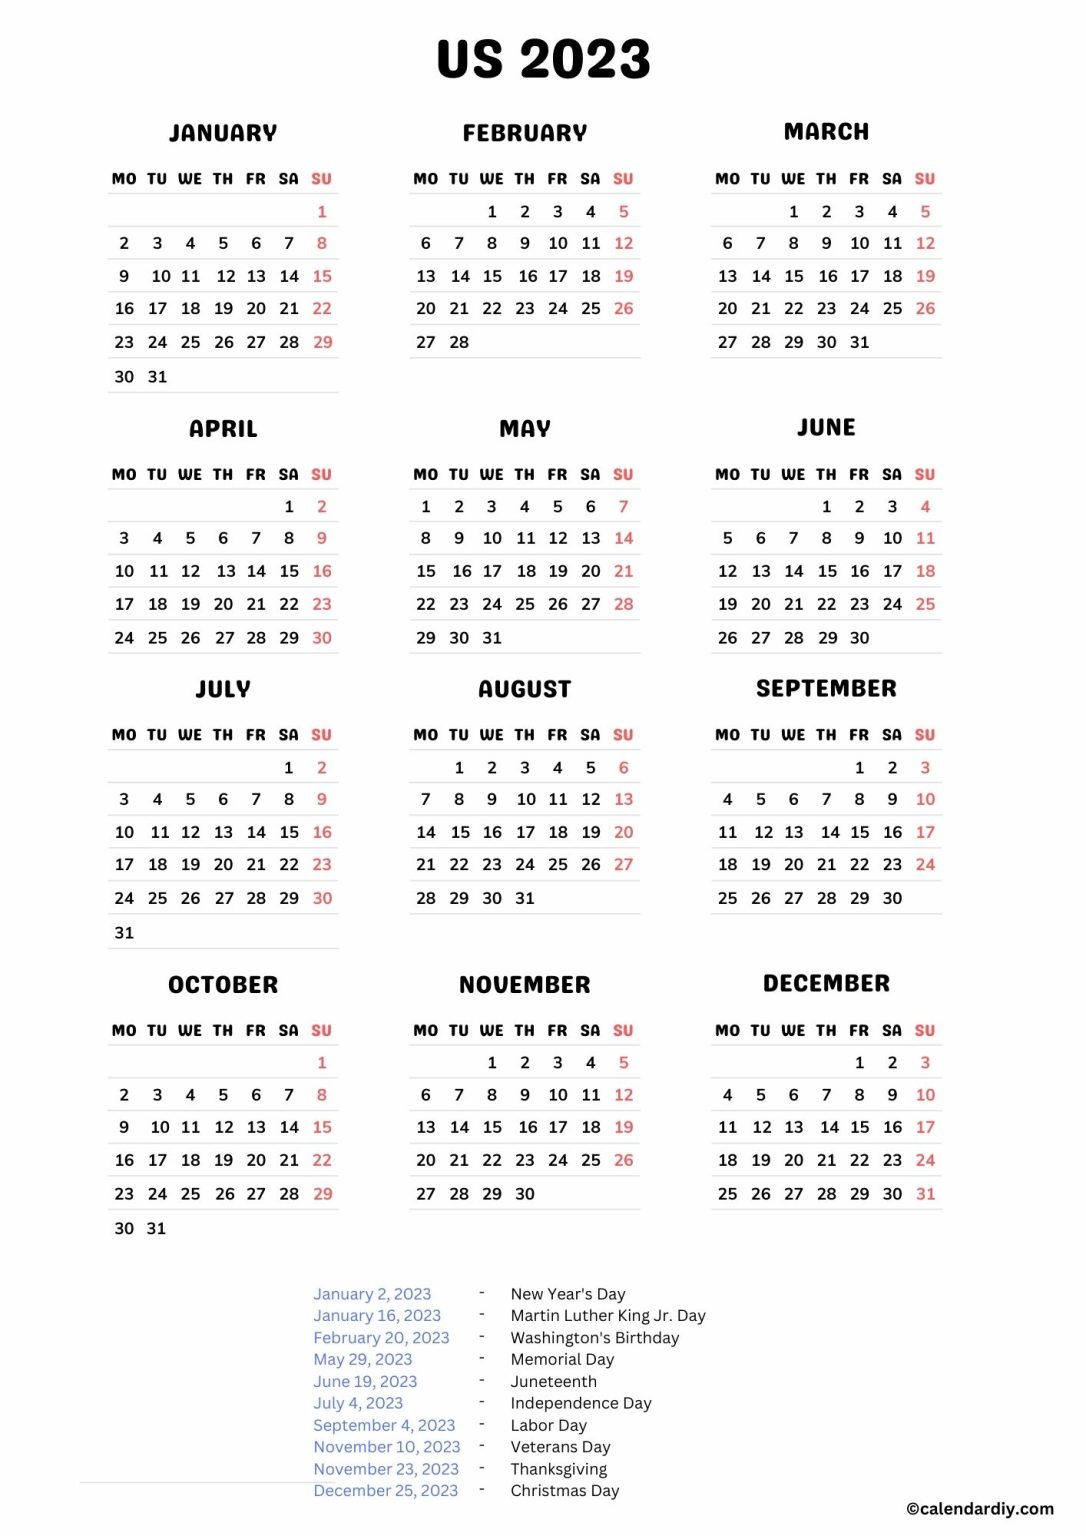 USA Public Holidays 2023 Calendar | USA Holidays 2023